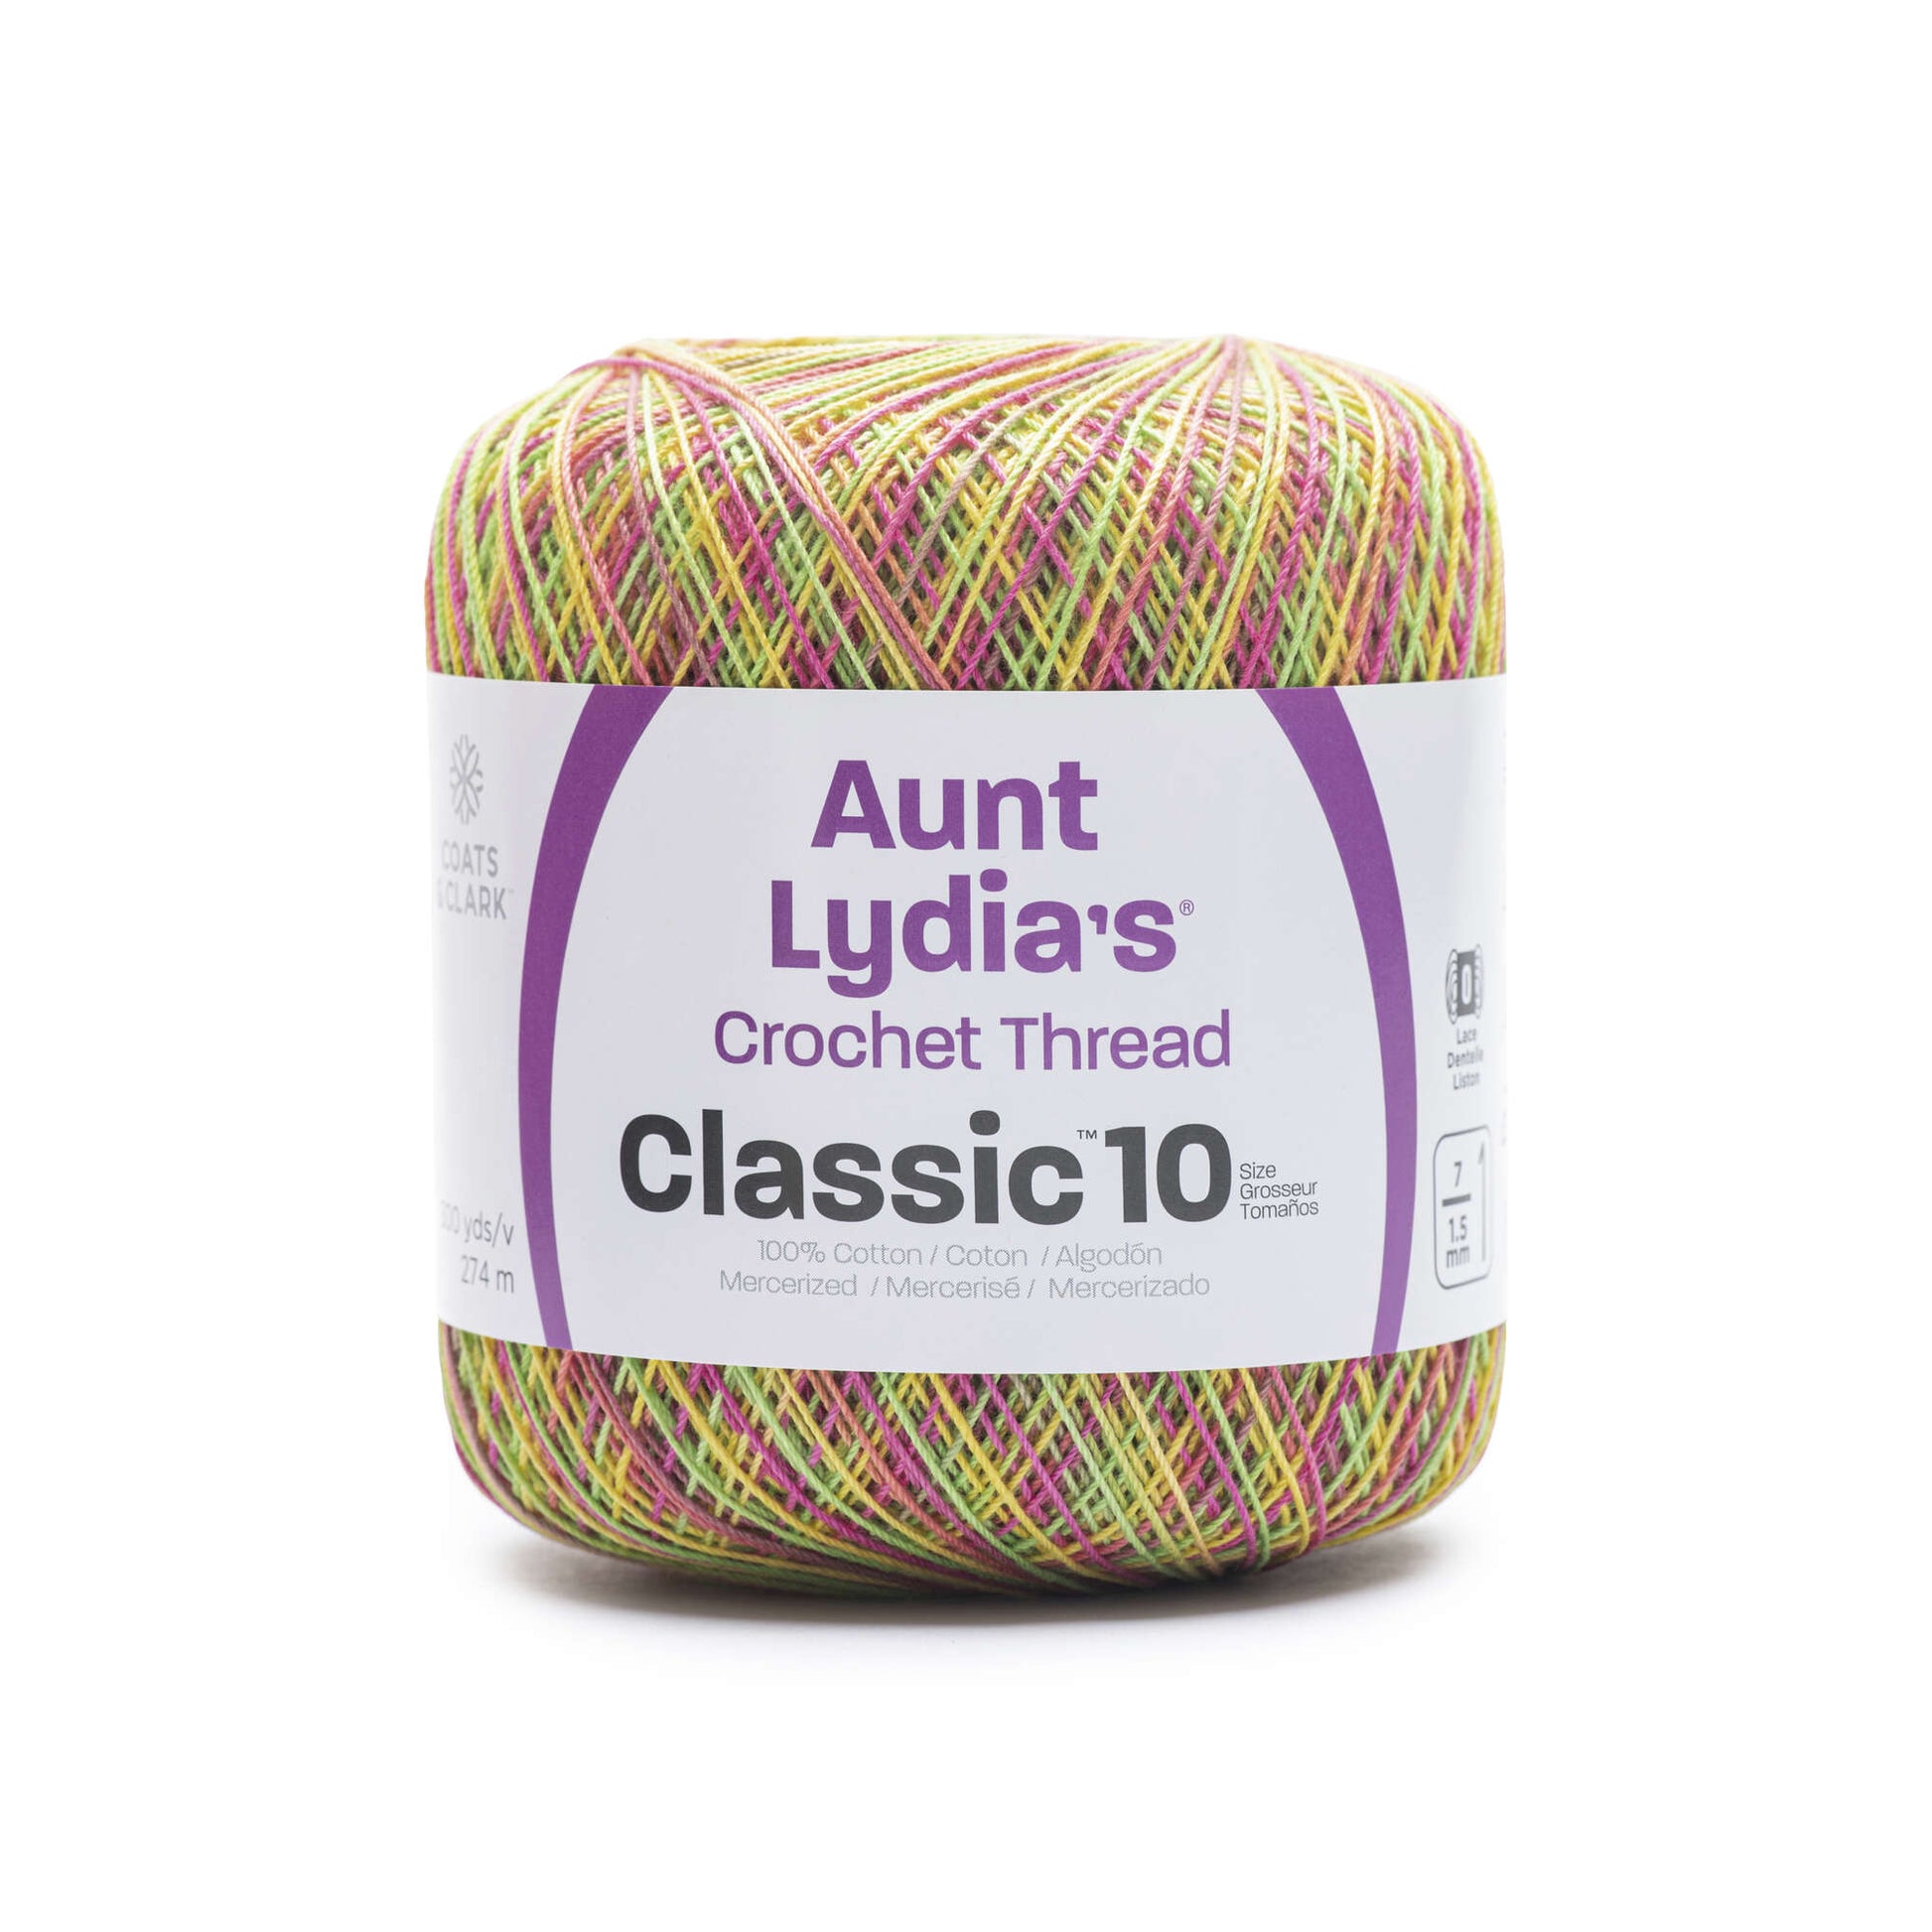 Écheveau géant de laine en coton pour crochet d'Aunt Lydia's